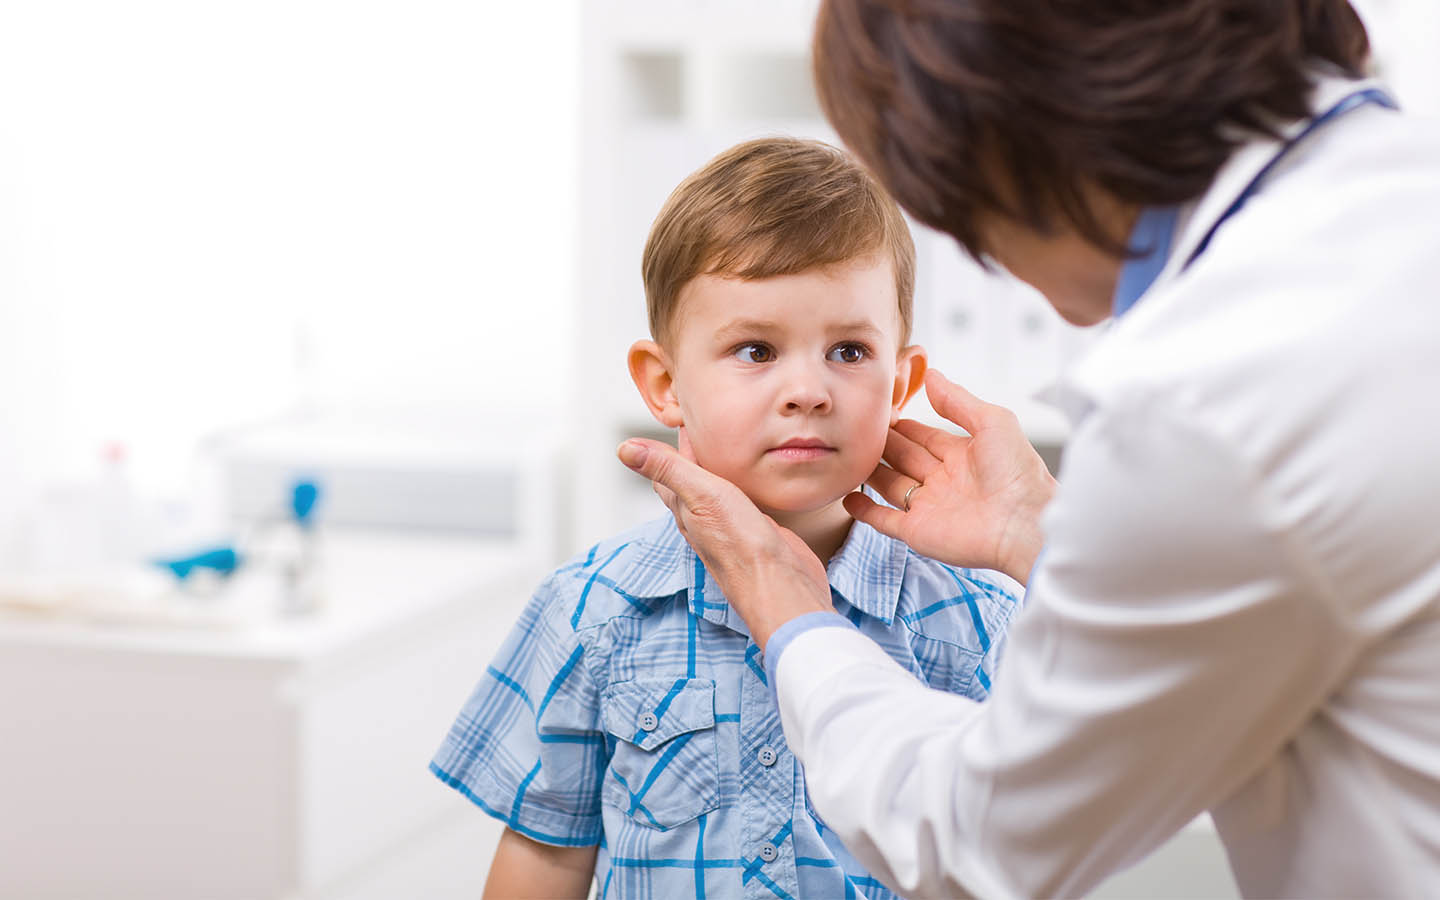 Audiólogo revisando el oído de un niño